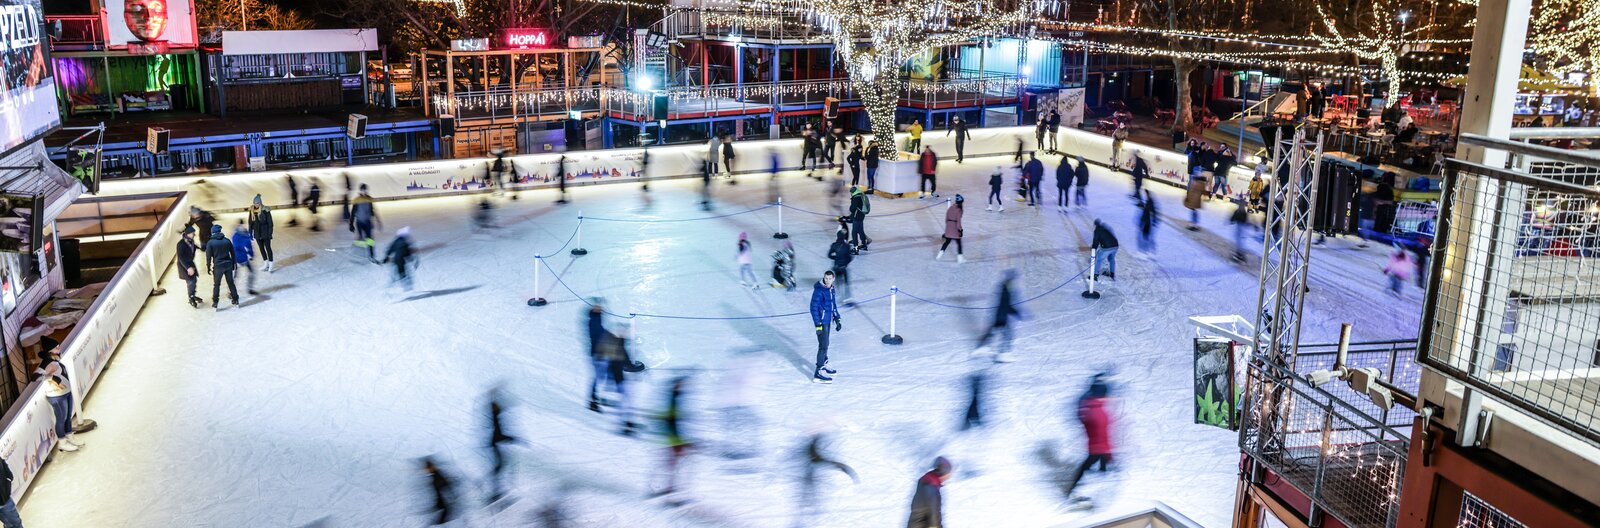 Téli örömök a jégen – Budapesti korcsolyapályákat ajánlunk